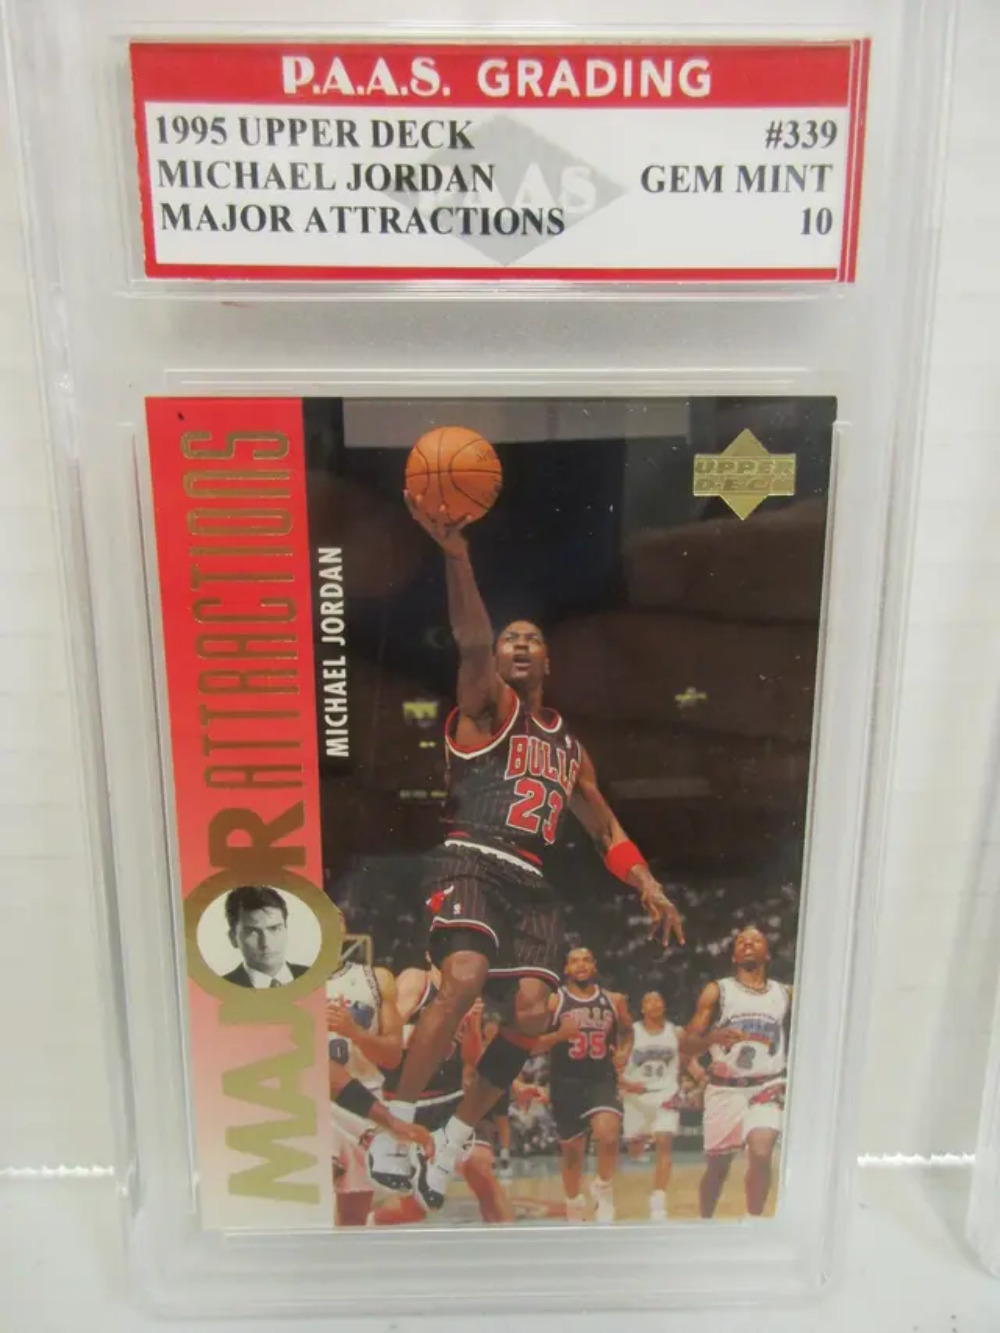 Michael Jordan Bulls 1995 Upper Deck Major Attractions #339 graded Gem Mint 10